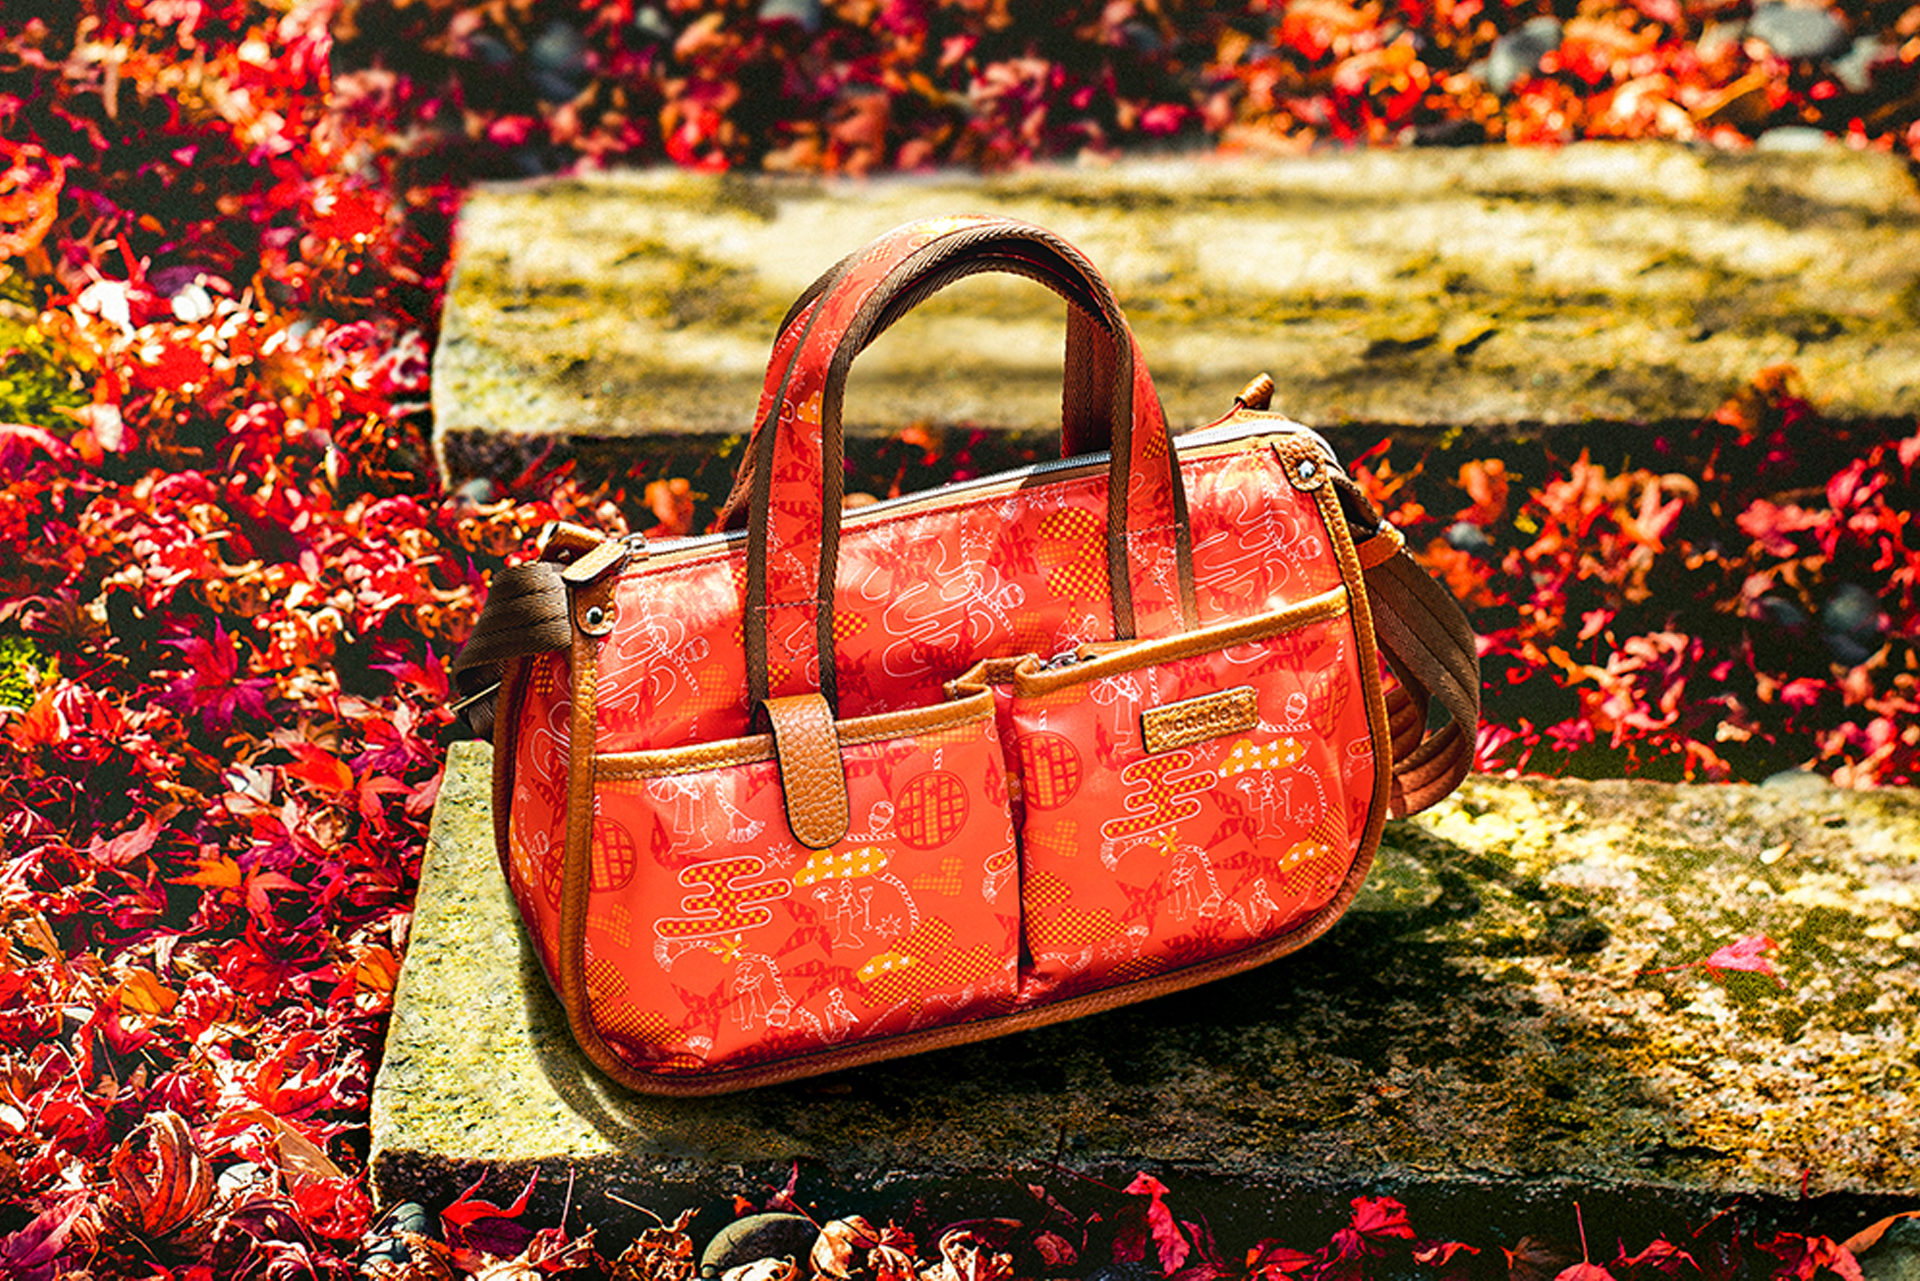 京都で和柄のバッグを探すなら | caedeKyoto[カエデ京都] 紅葉と伝統美を引き継ぐバッグ